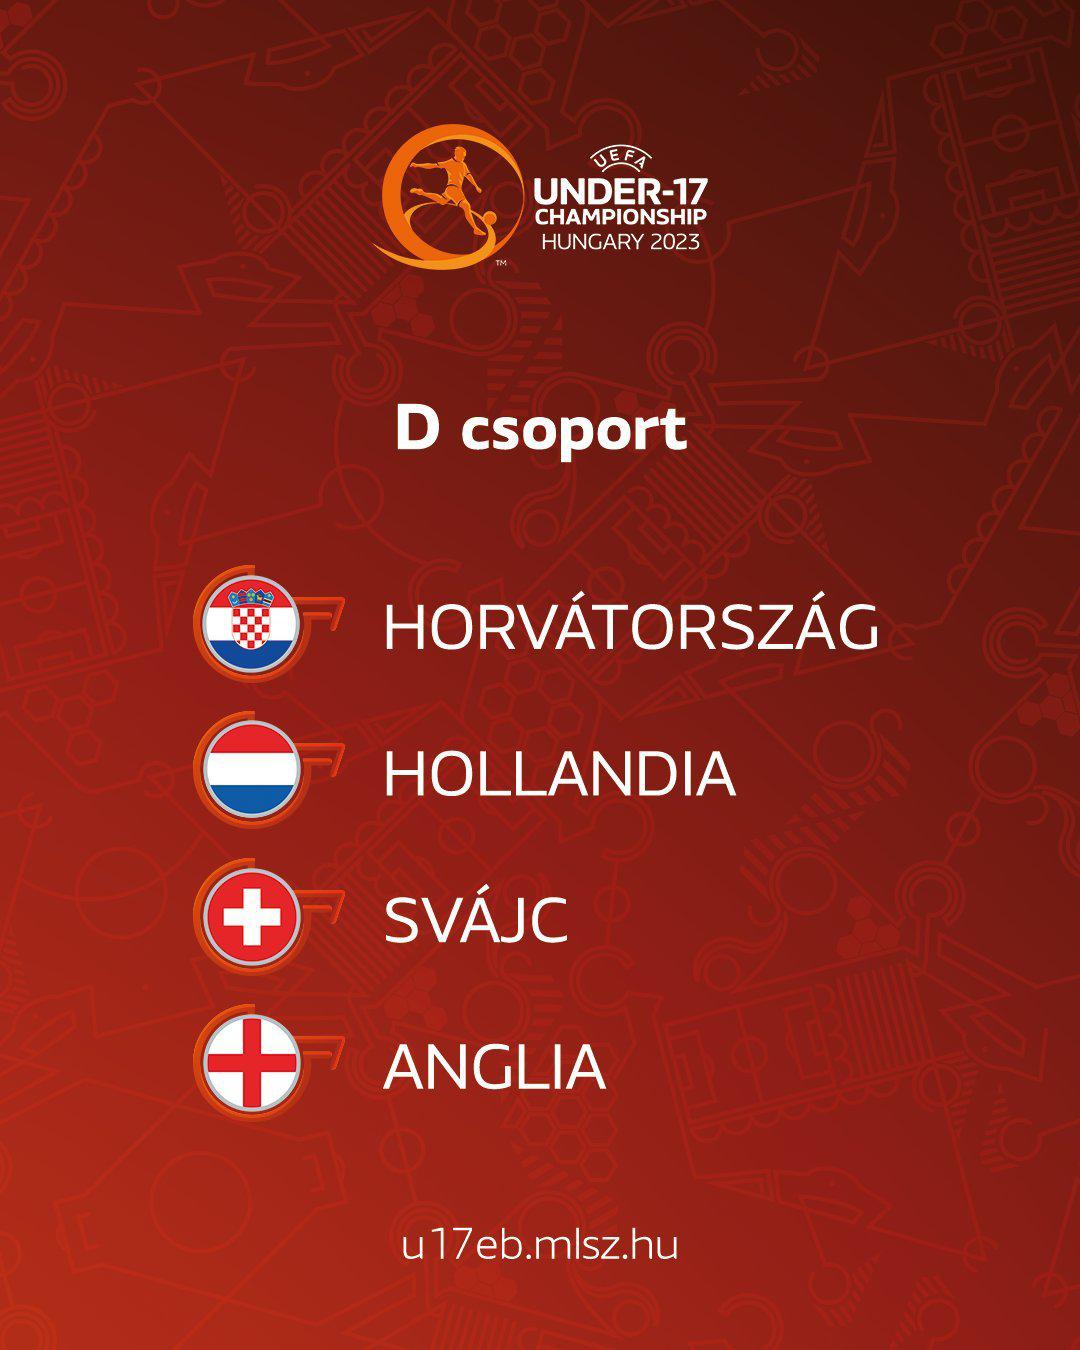 今年5月下旬在匈牙利举行的U17欧洲杯抽签分组确定，共16支球队参加。英格兰分在